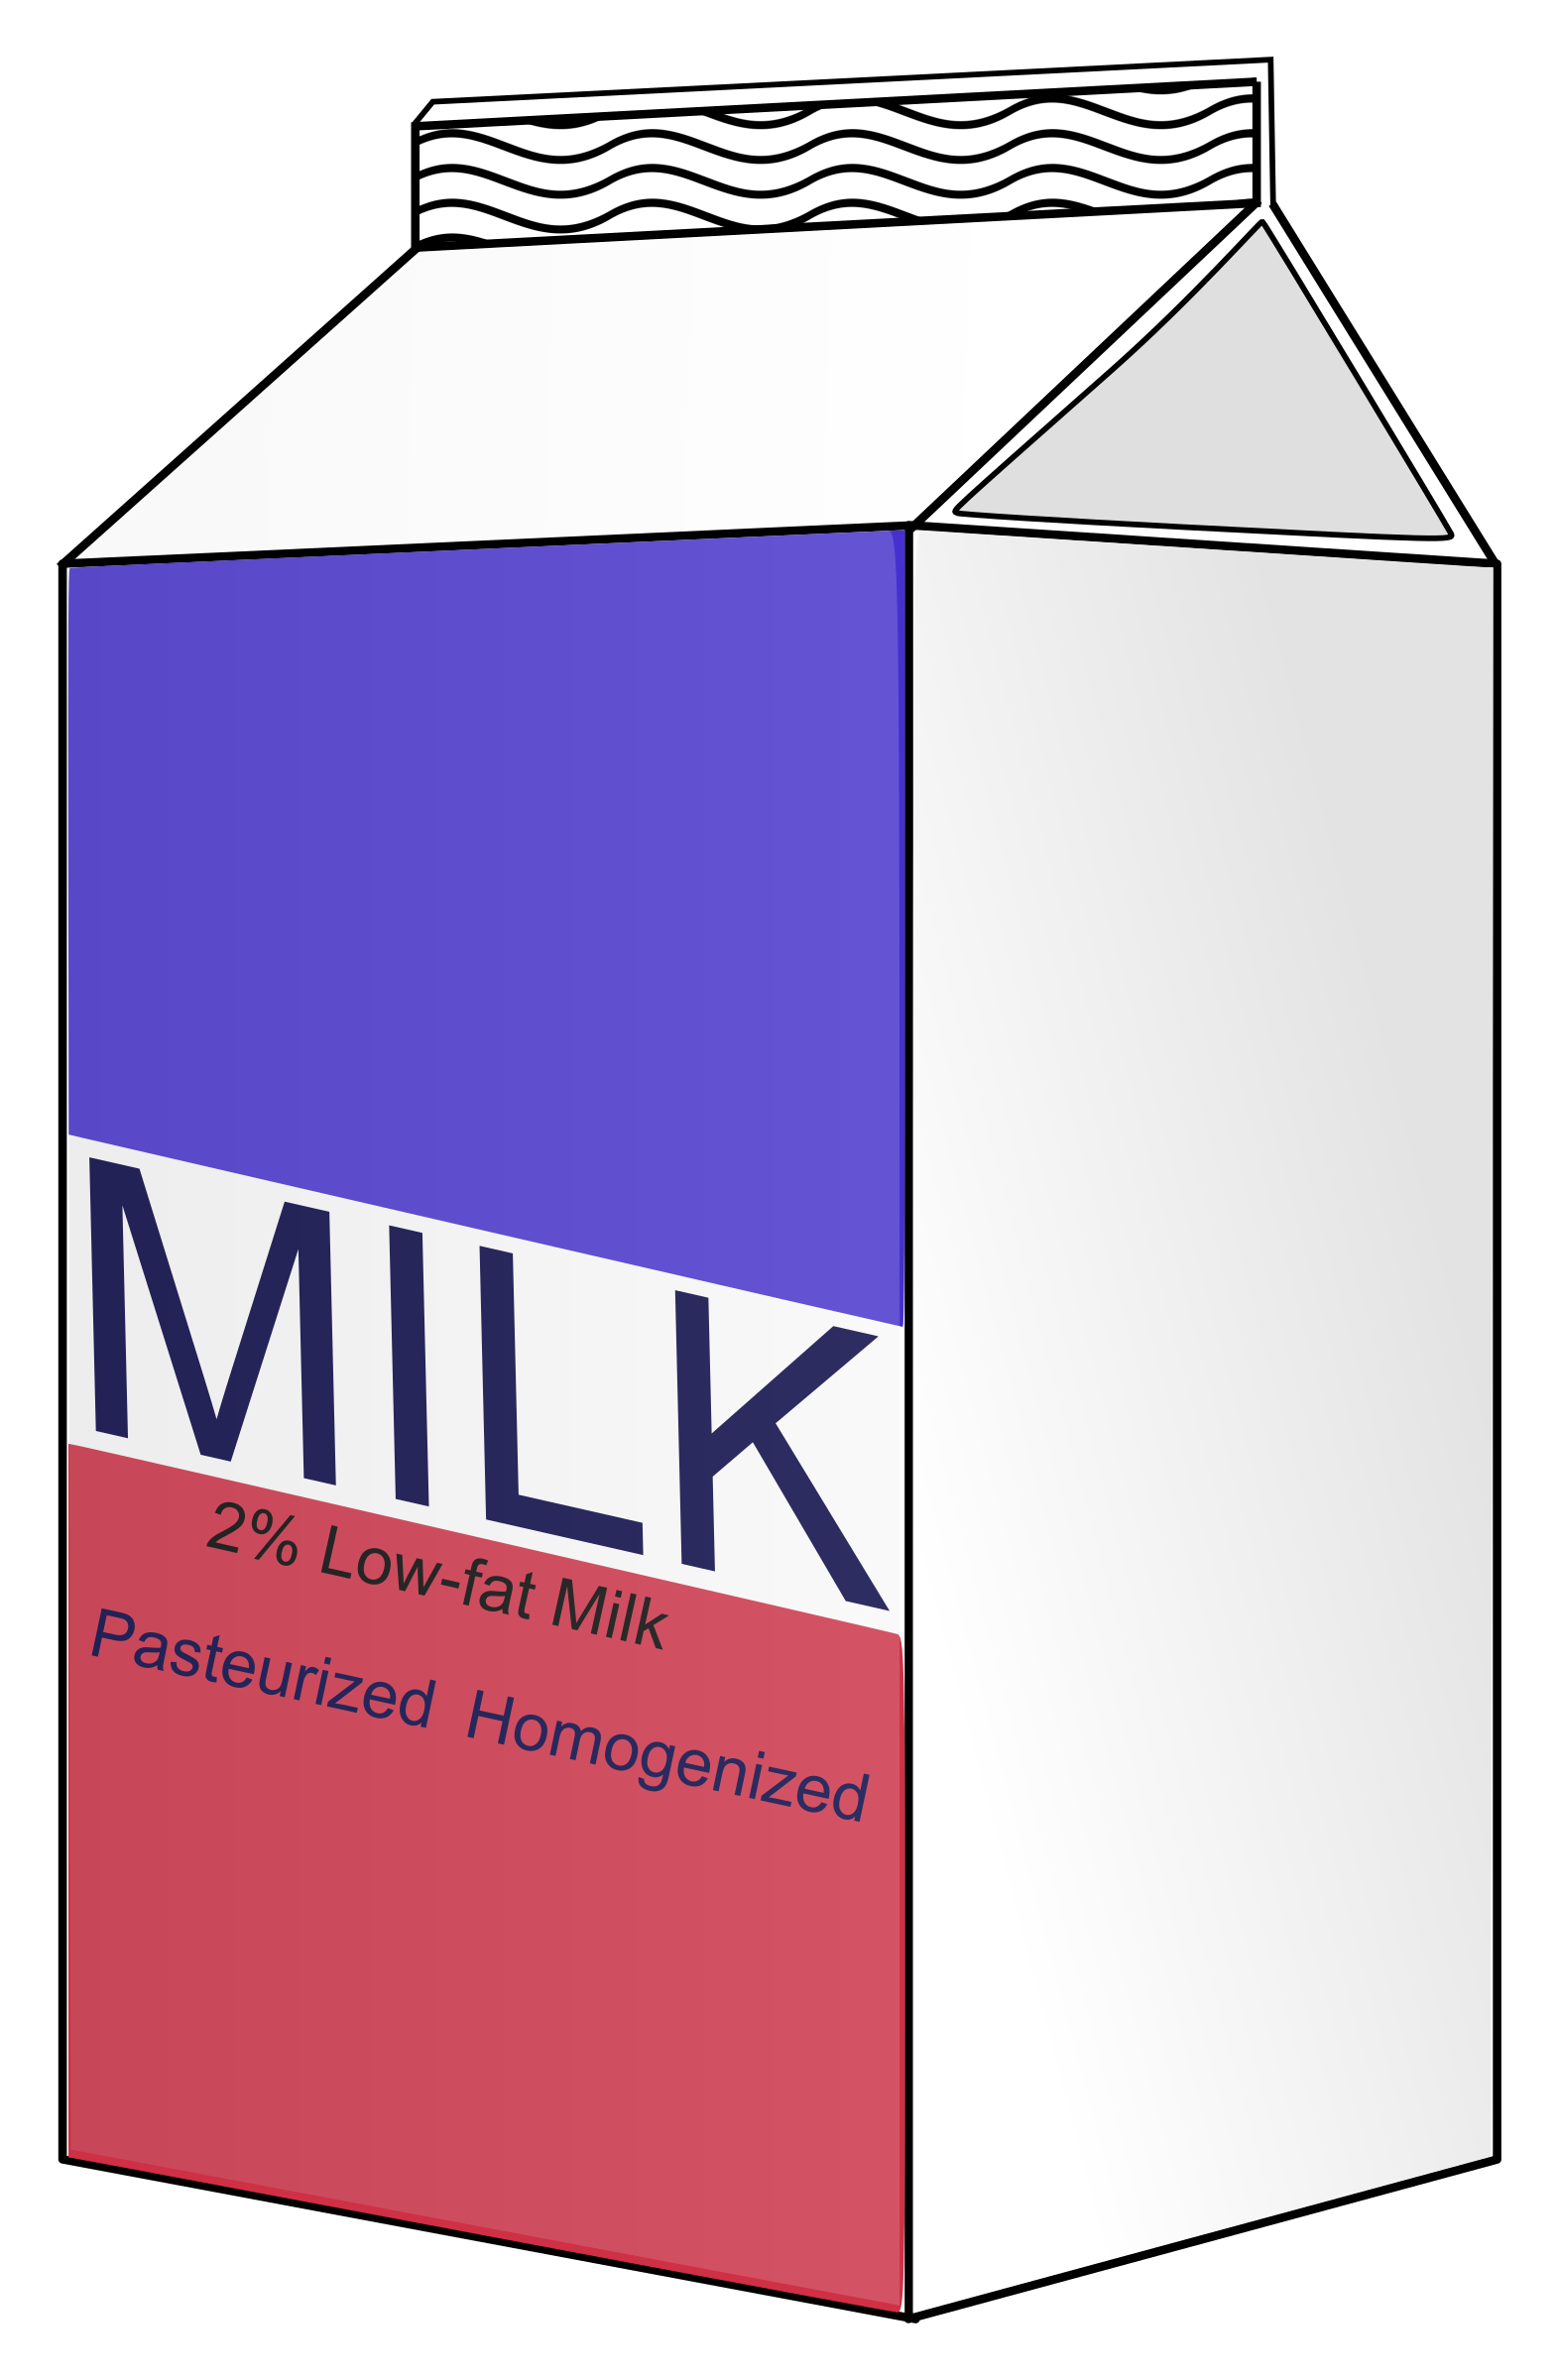 clipart milk carton